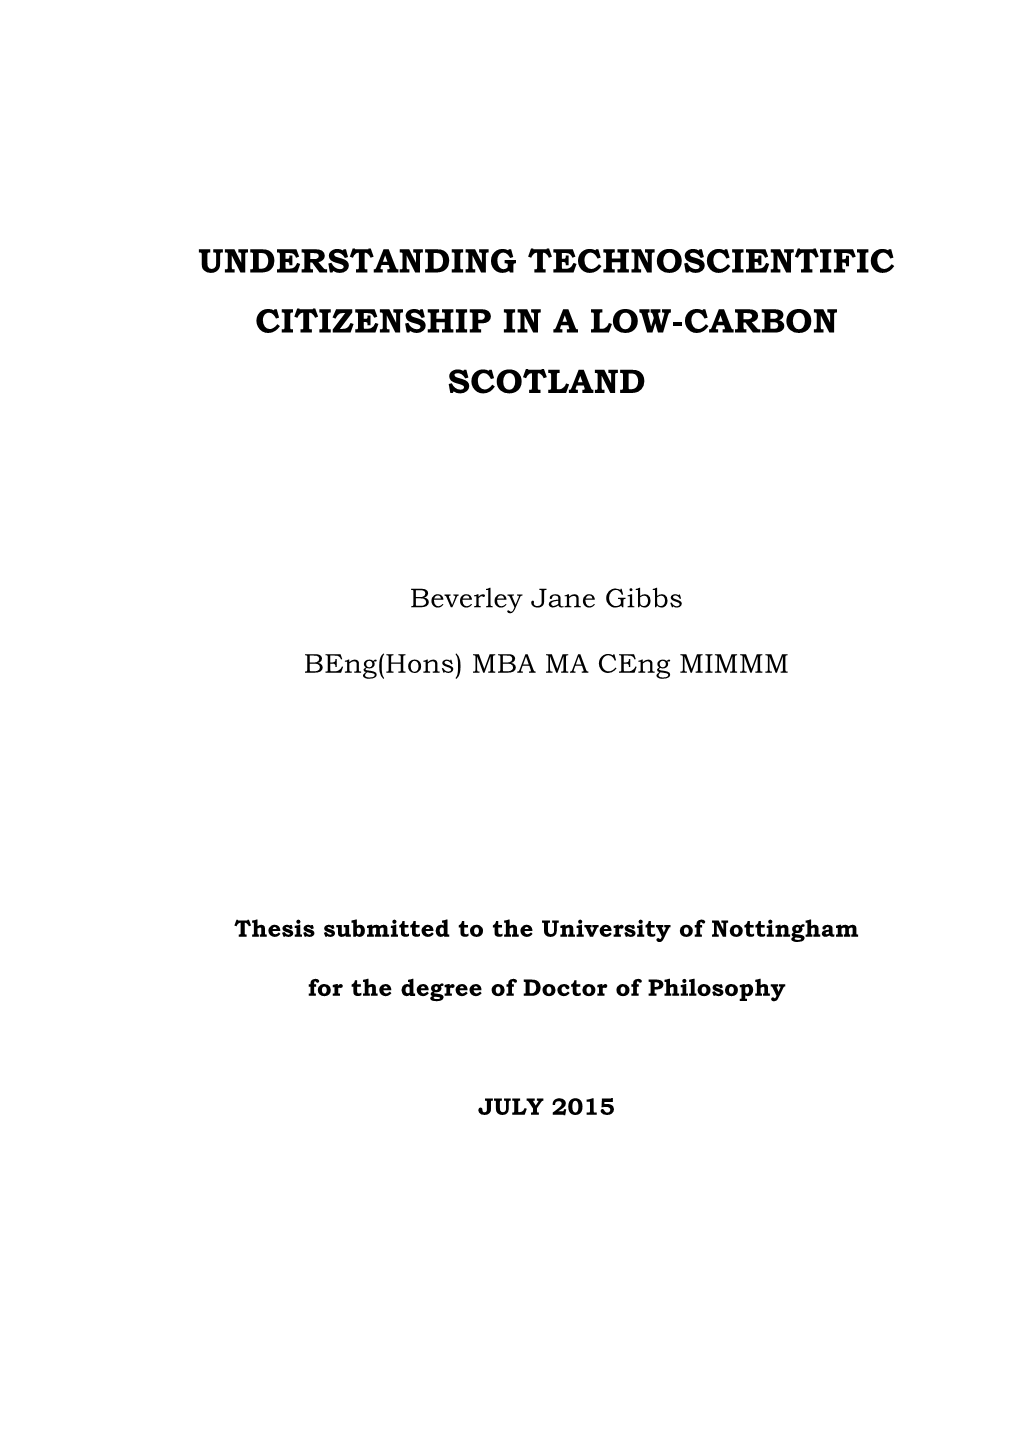 Understanding Technoscientific Citizenship in a Low-Carbon Scotland